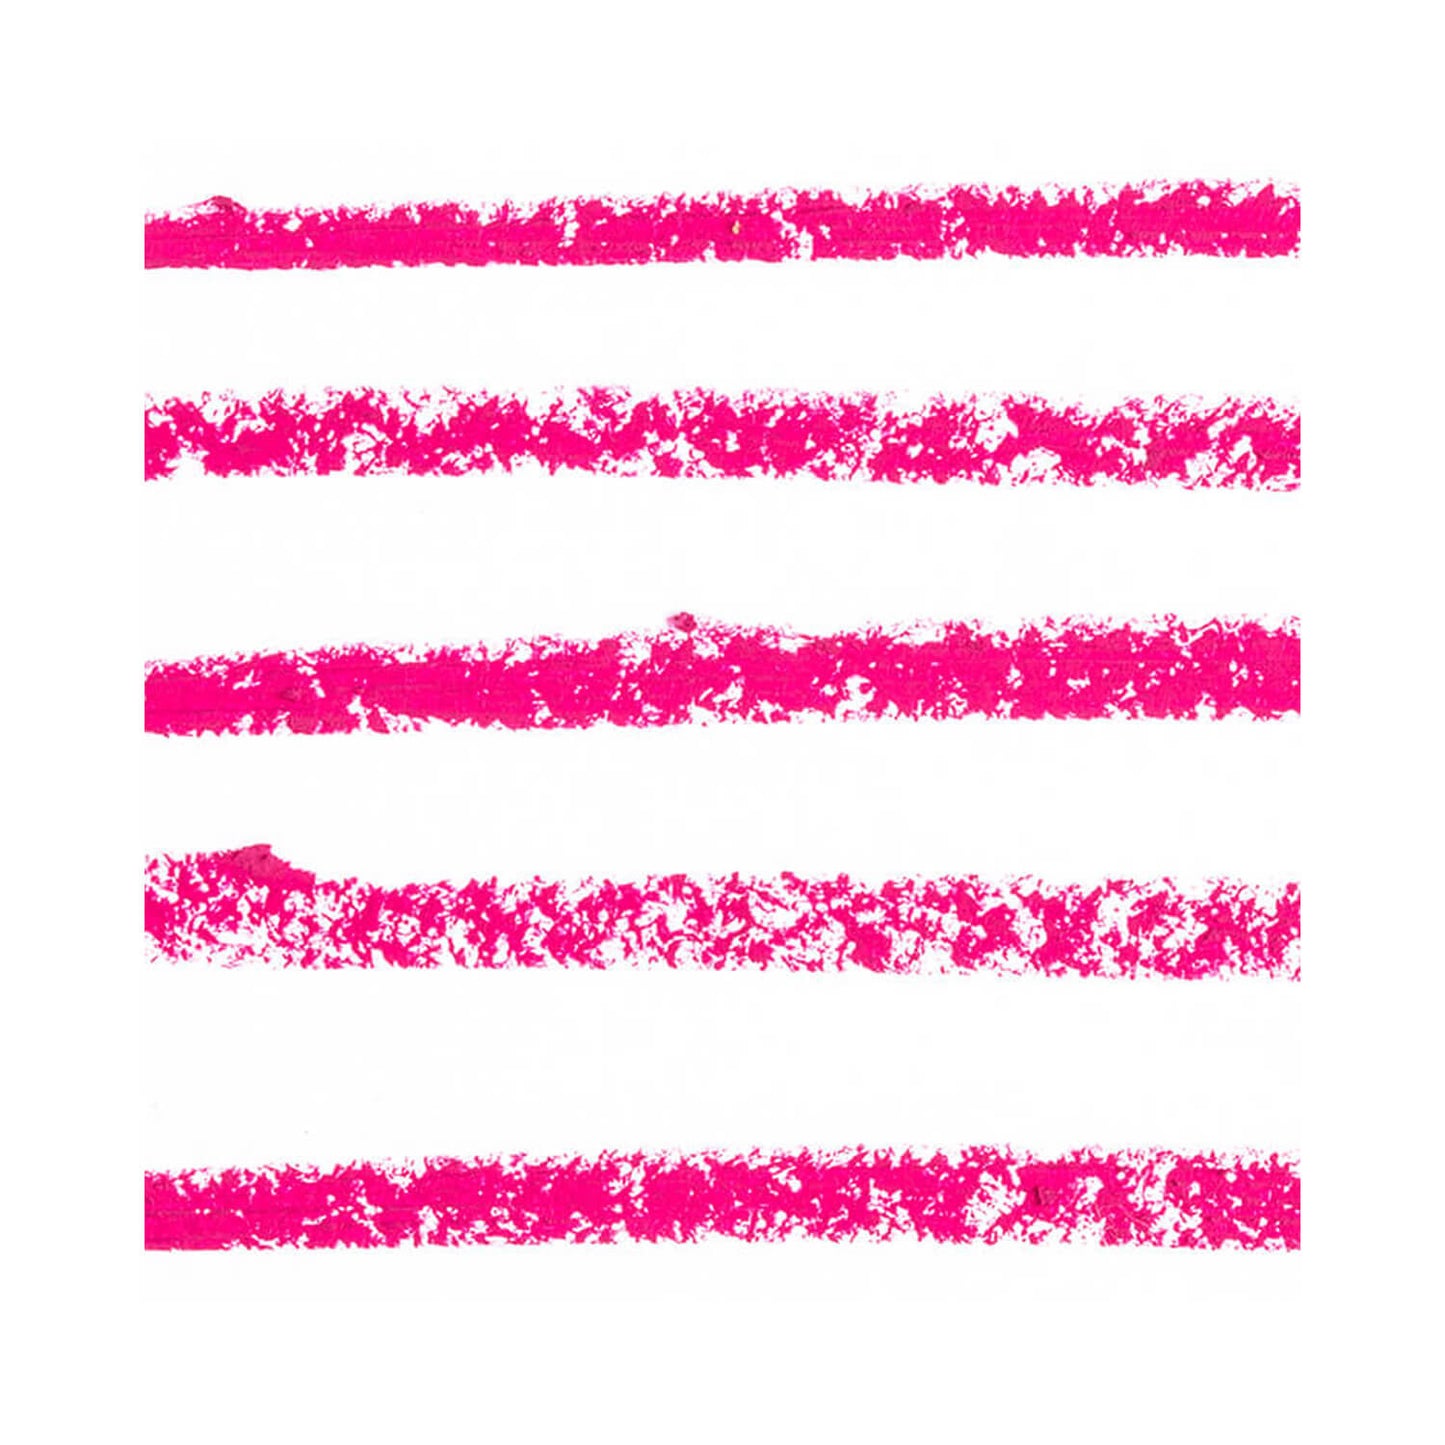 Sigma Pink Powder Crayon Sigma Pink